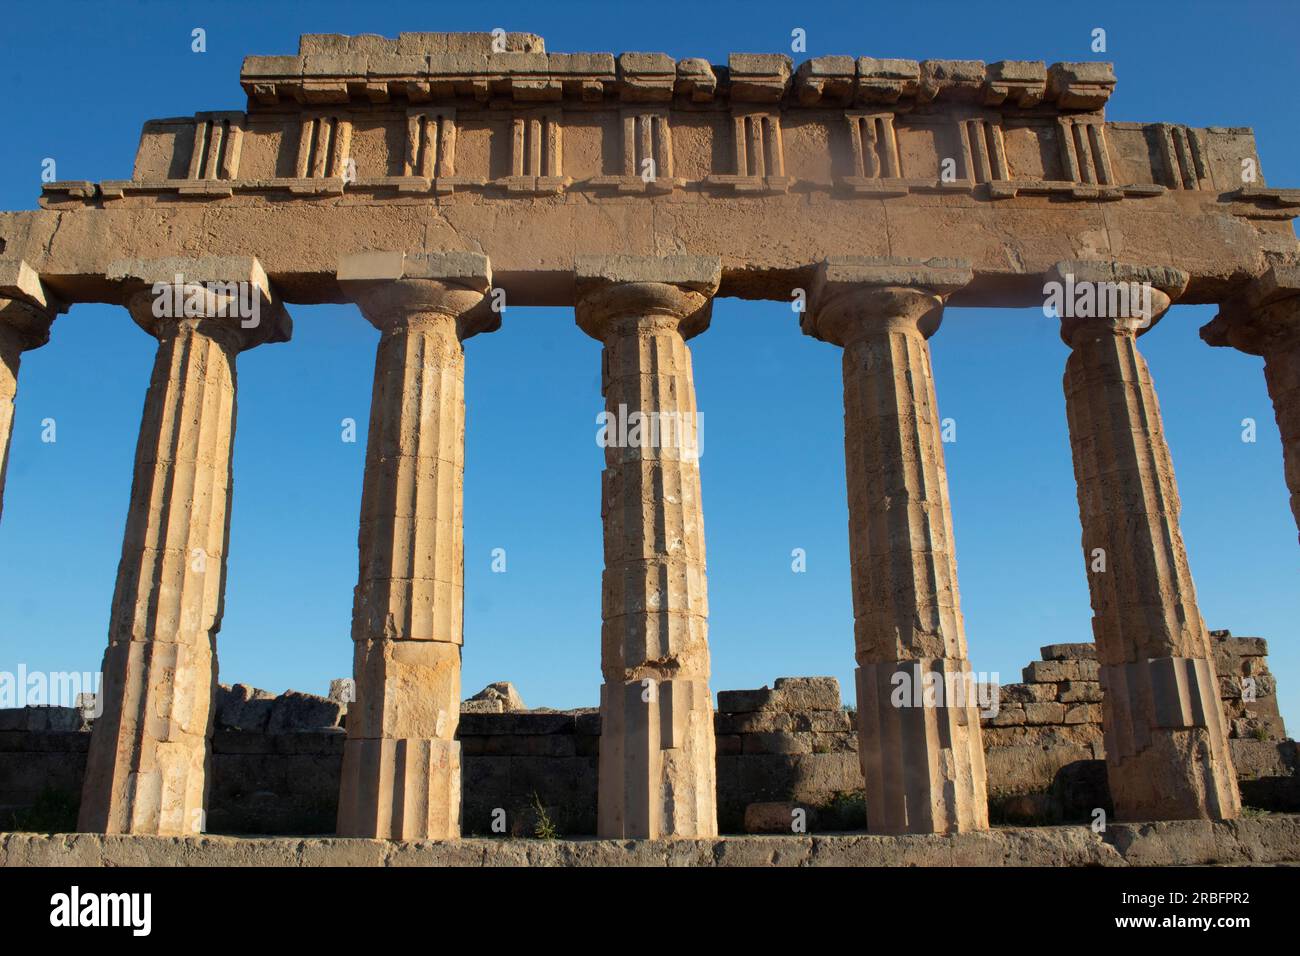 Ruinen des griechischen Tempels C - auf der Akropolis, der auf einem Hügel gelegenen Zitadelle der Stadt Selinunte - Selinus - im äußersten Westen von Sizilien, Italien Stockfoto